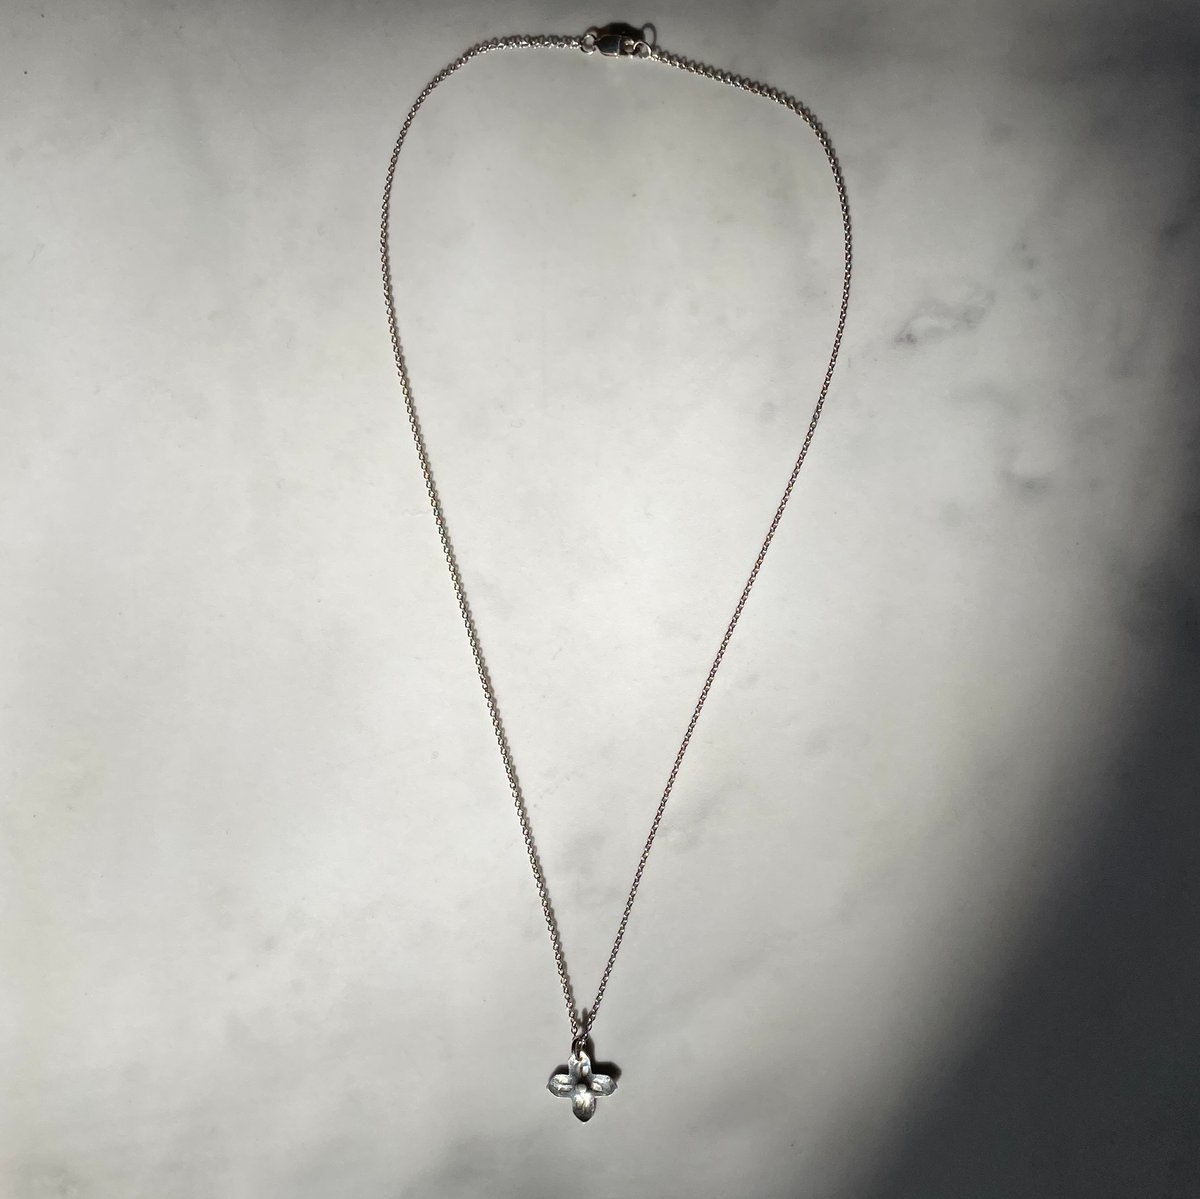 Image of botanica necklace